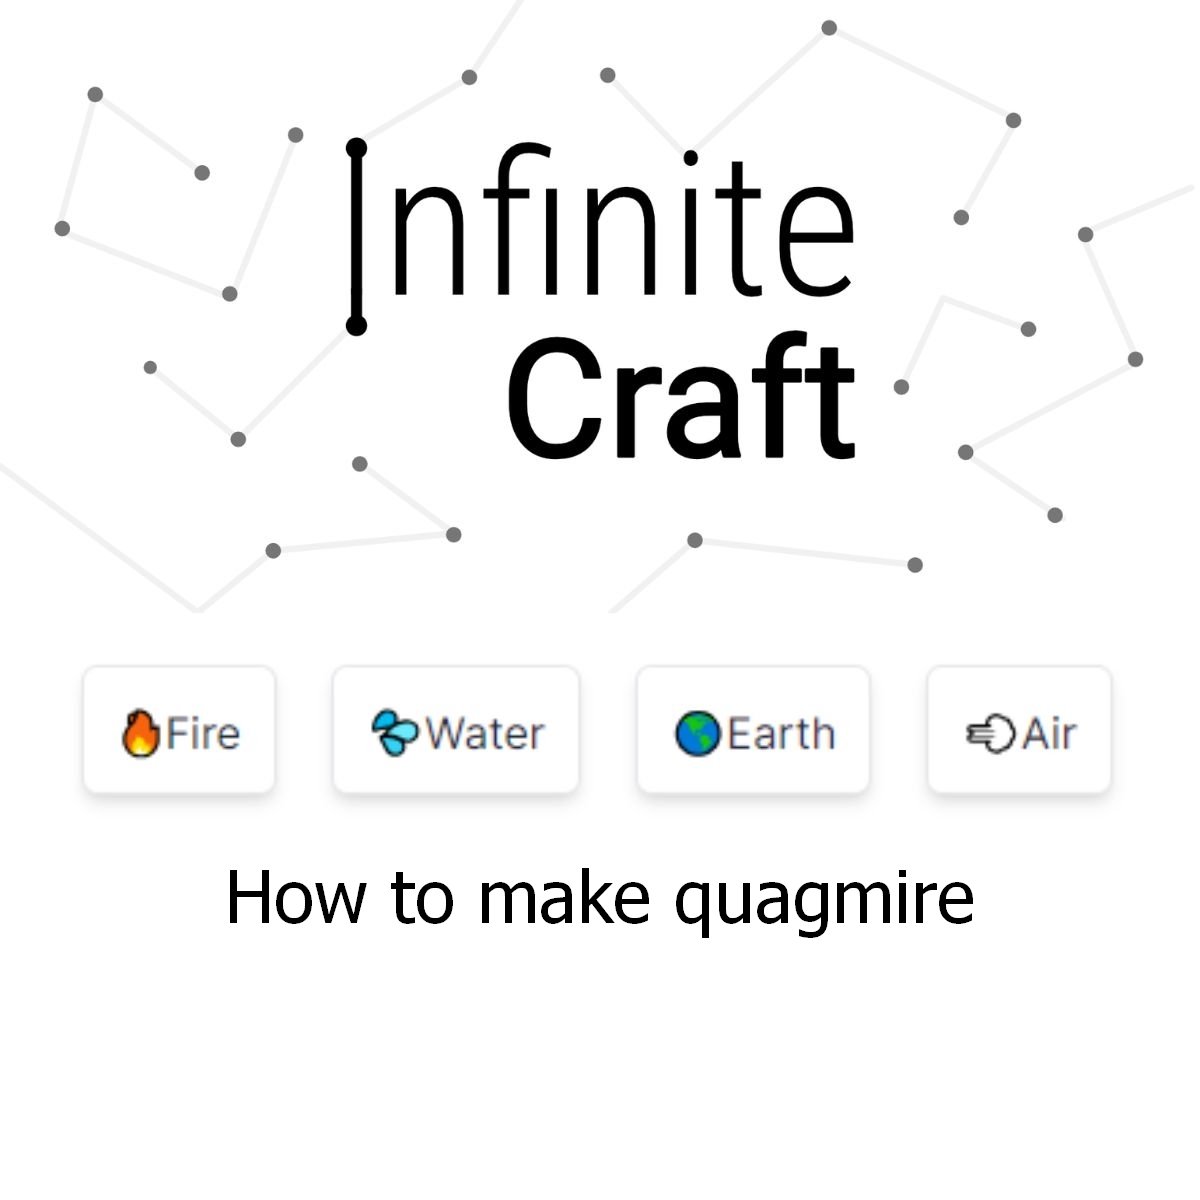 how to make quagmire in infinite craft